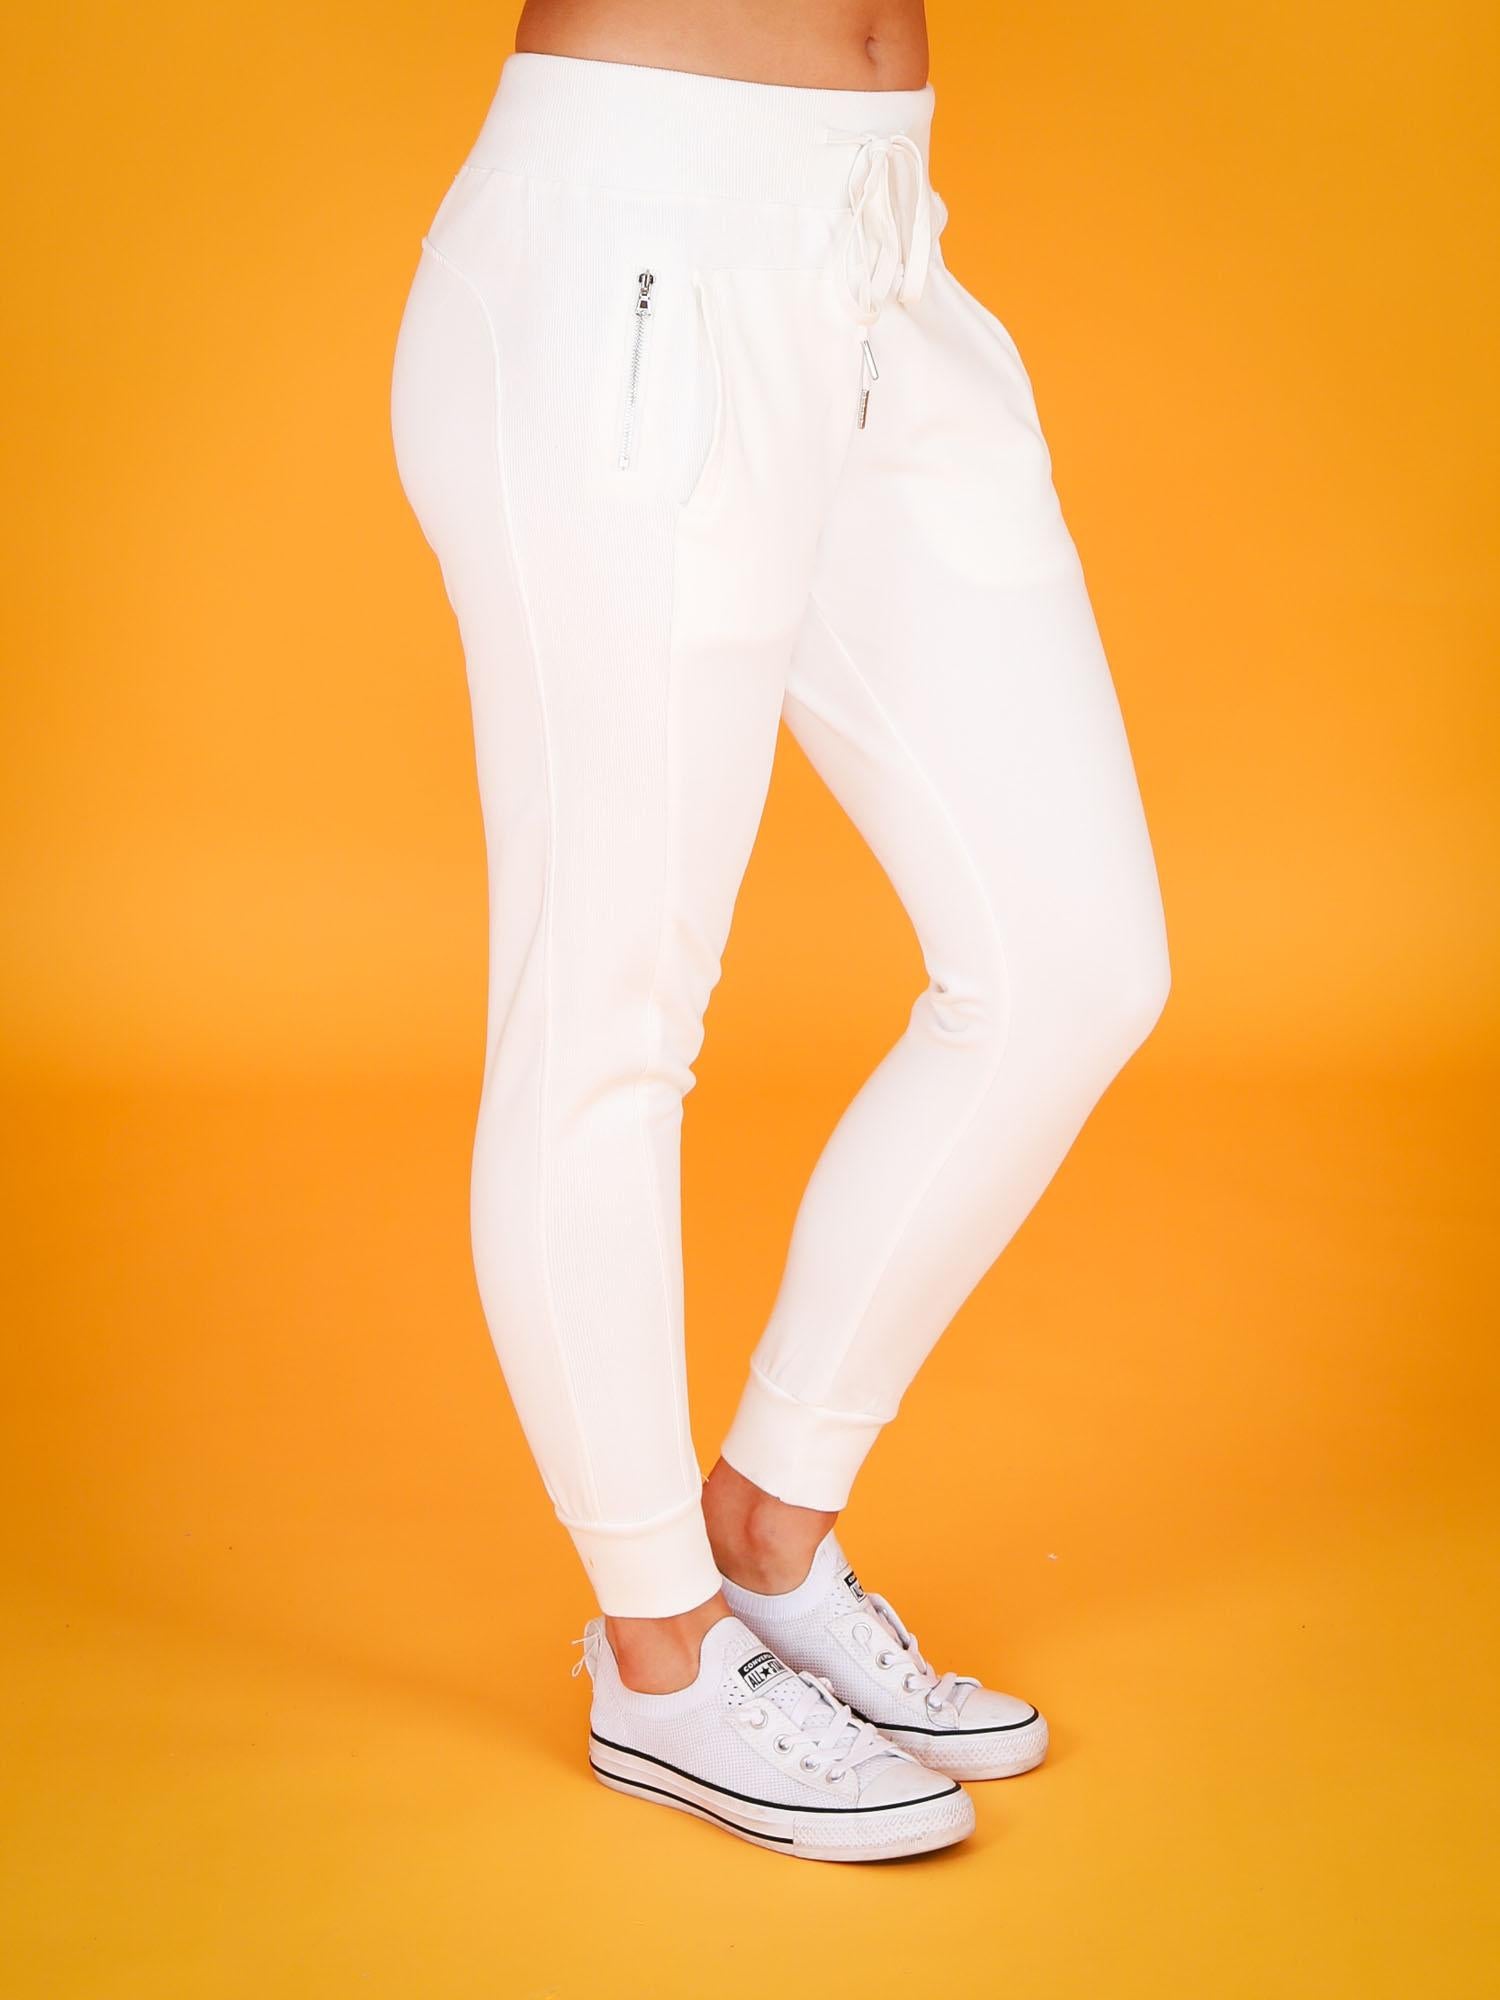 jogger pants women #color_white